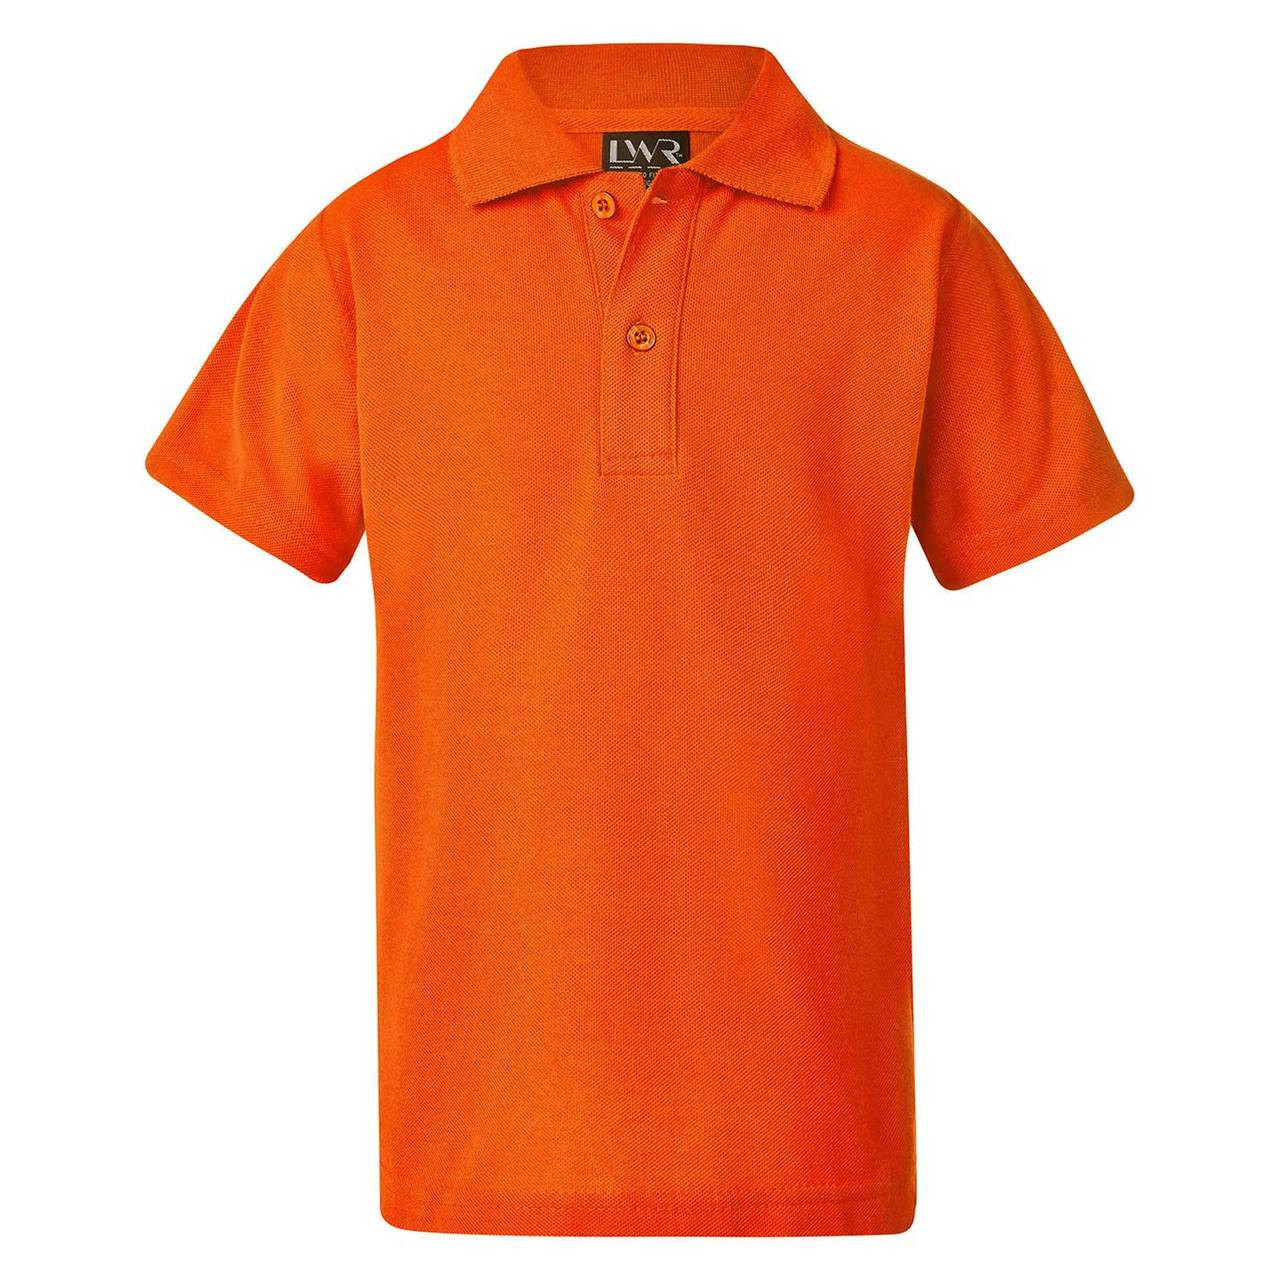 TOOWONG | Unisex Polo Shirts 